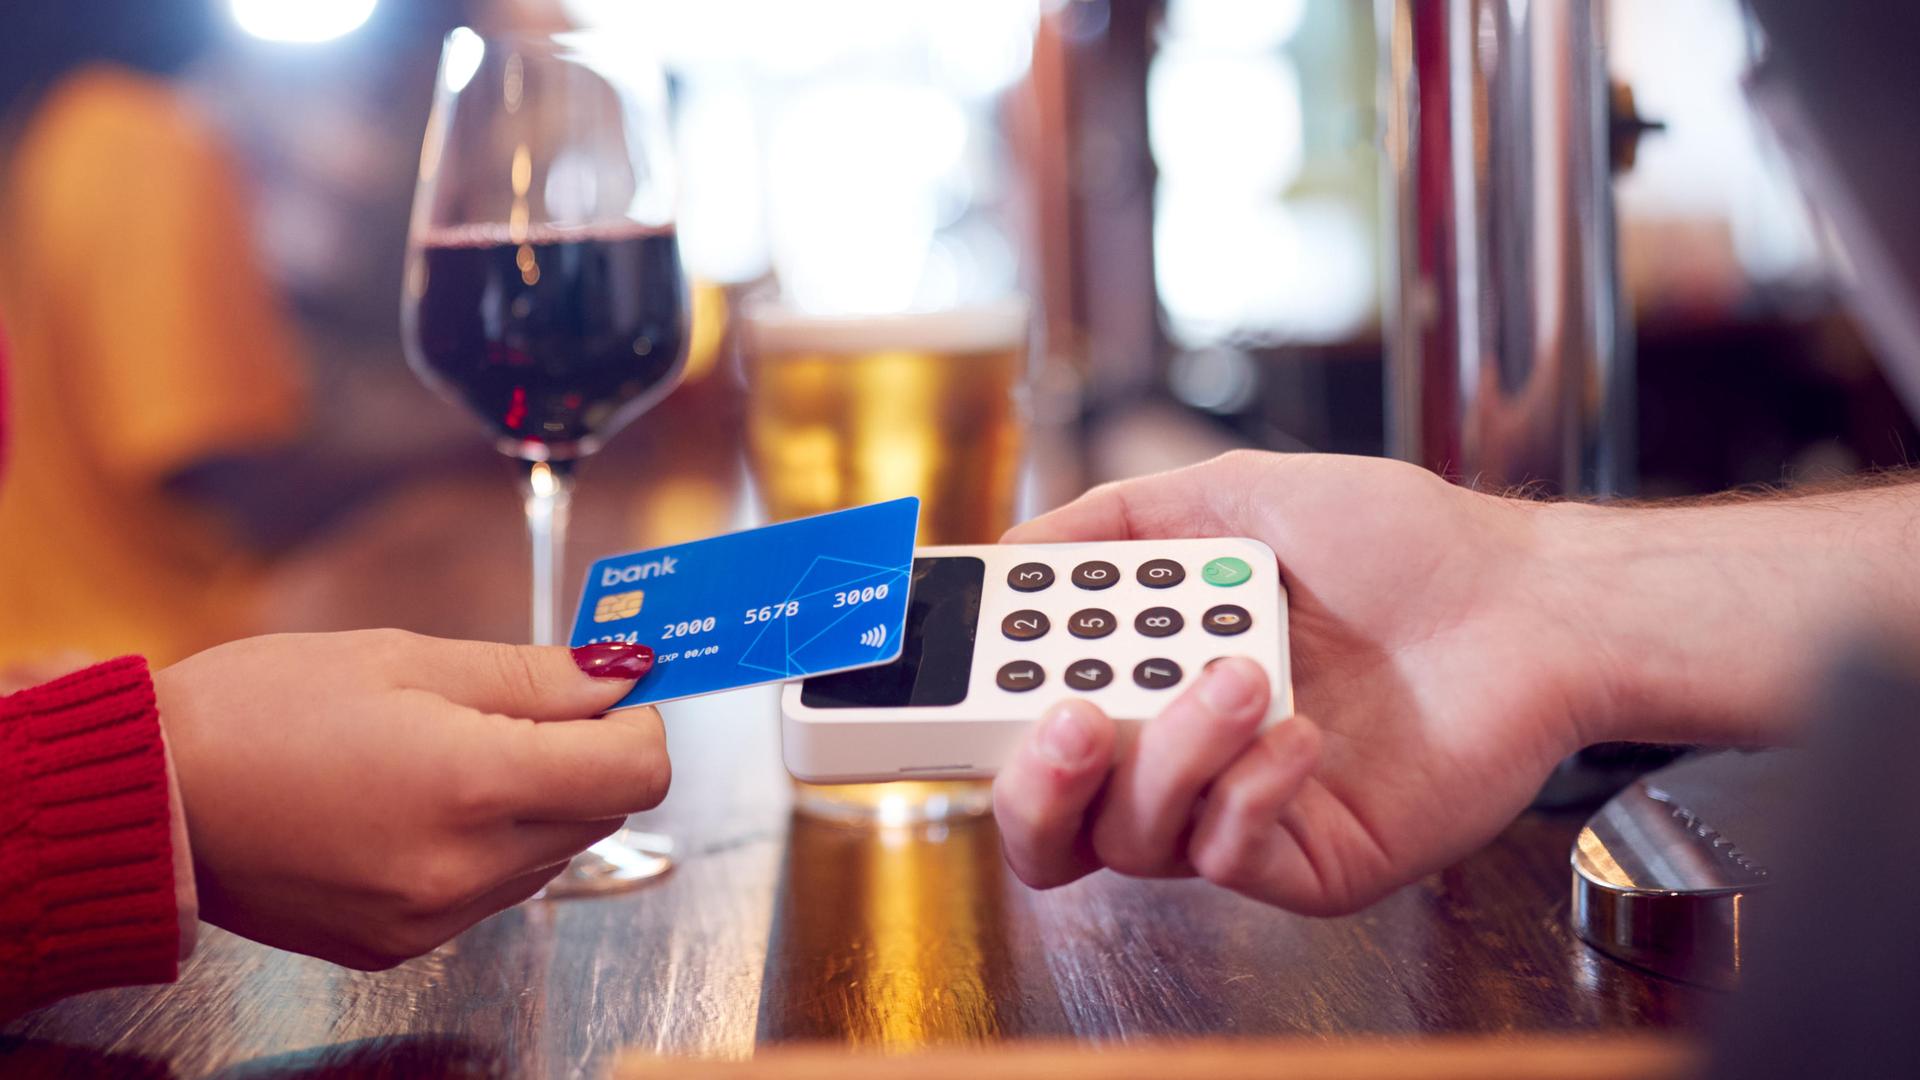 Digitales Bezahlen: Hat Bargeld auch bei uns bald ausgedient?